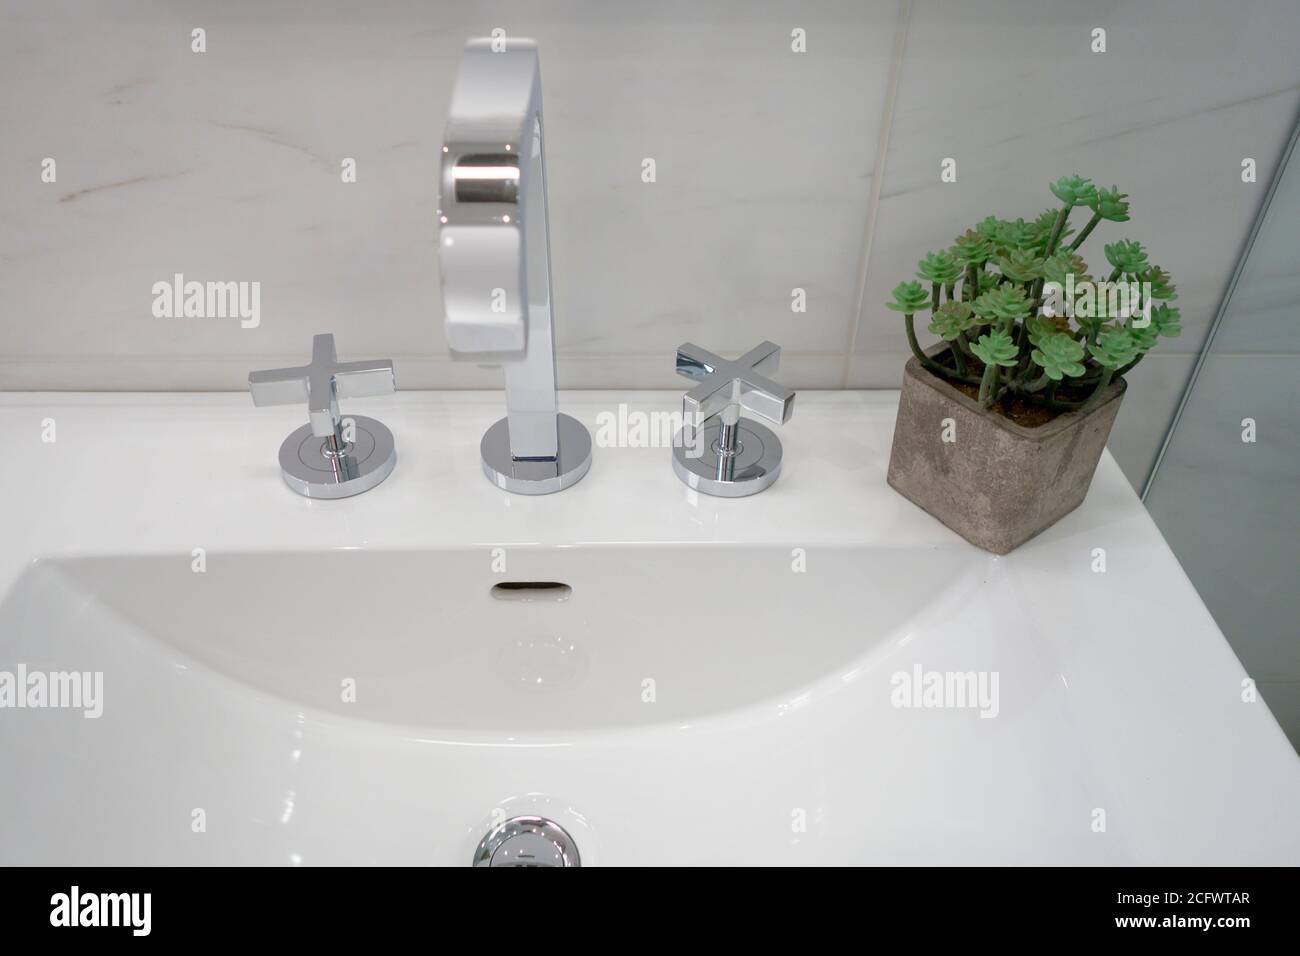 lavabo avec robinet de salle de bains, décoration végétale et style moderne Banque D'Images